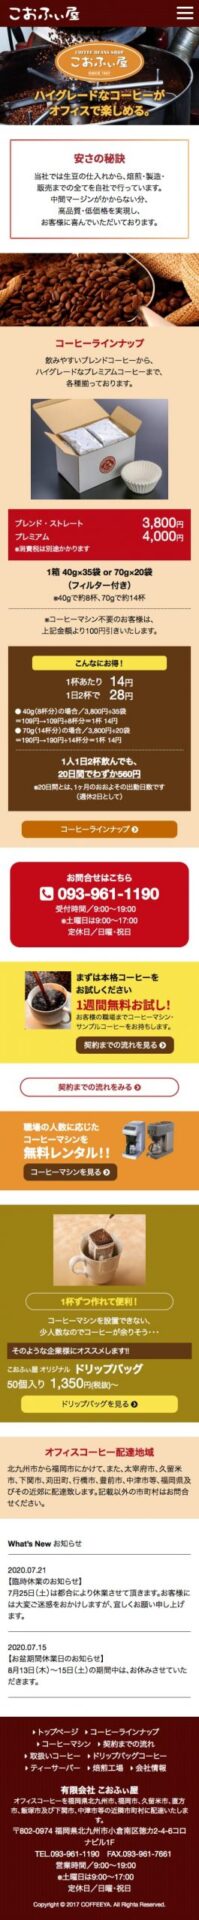 九州市小倉南区のコーヒー豆販売会社 ホームページ作成見本 スマホ表示